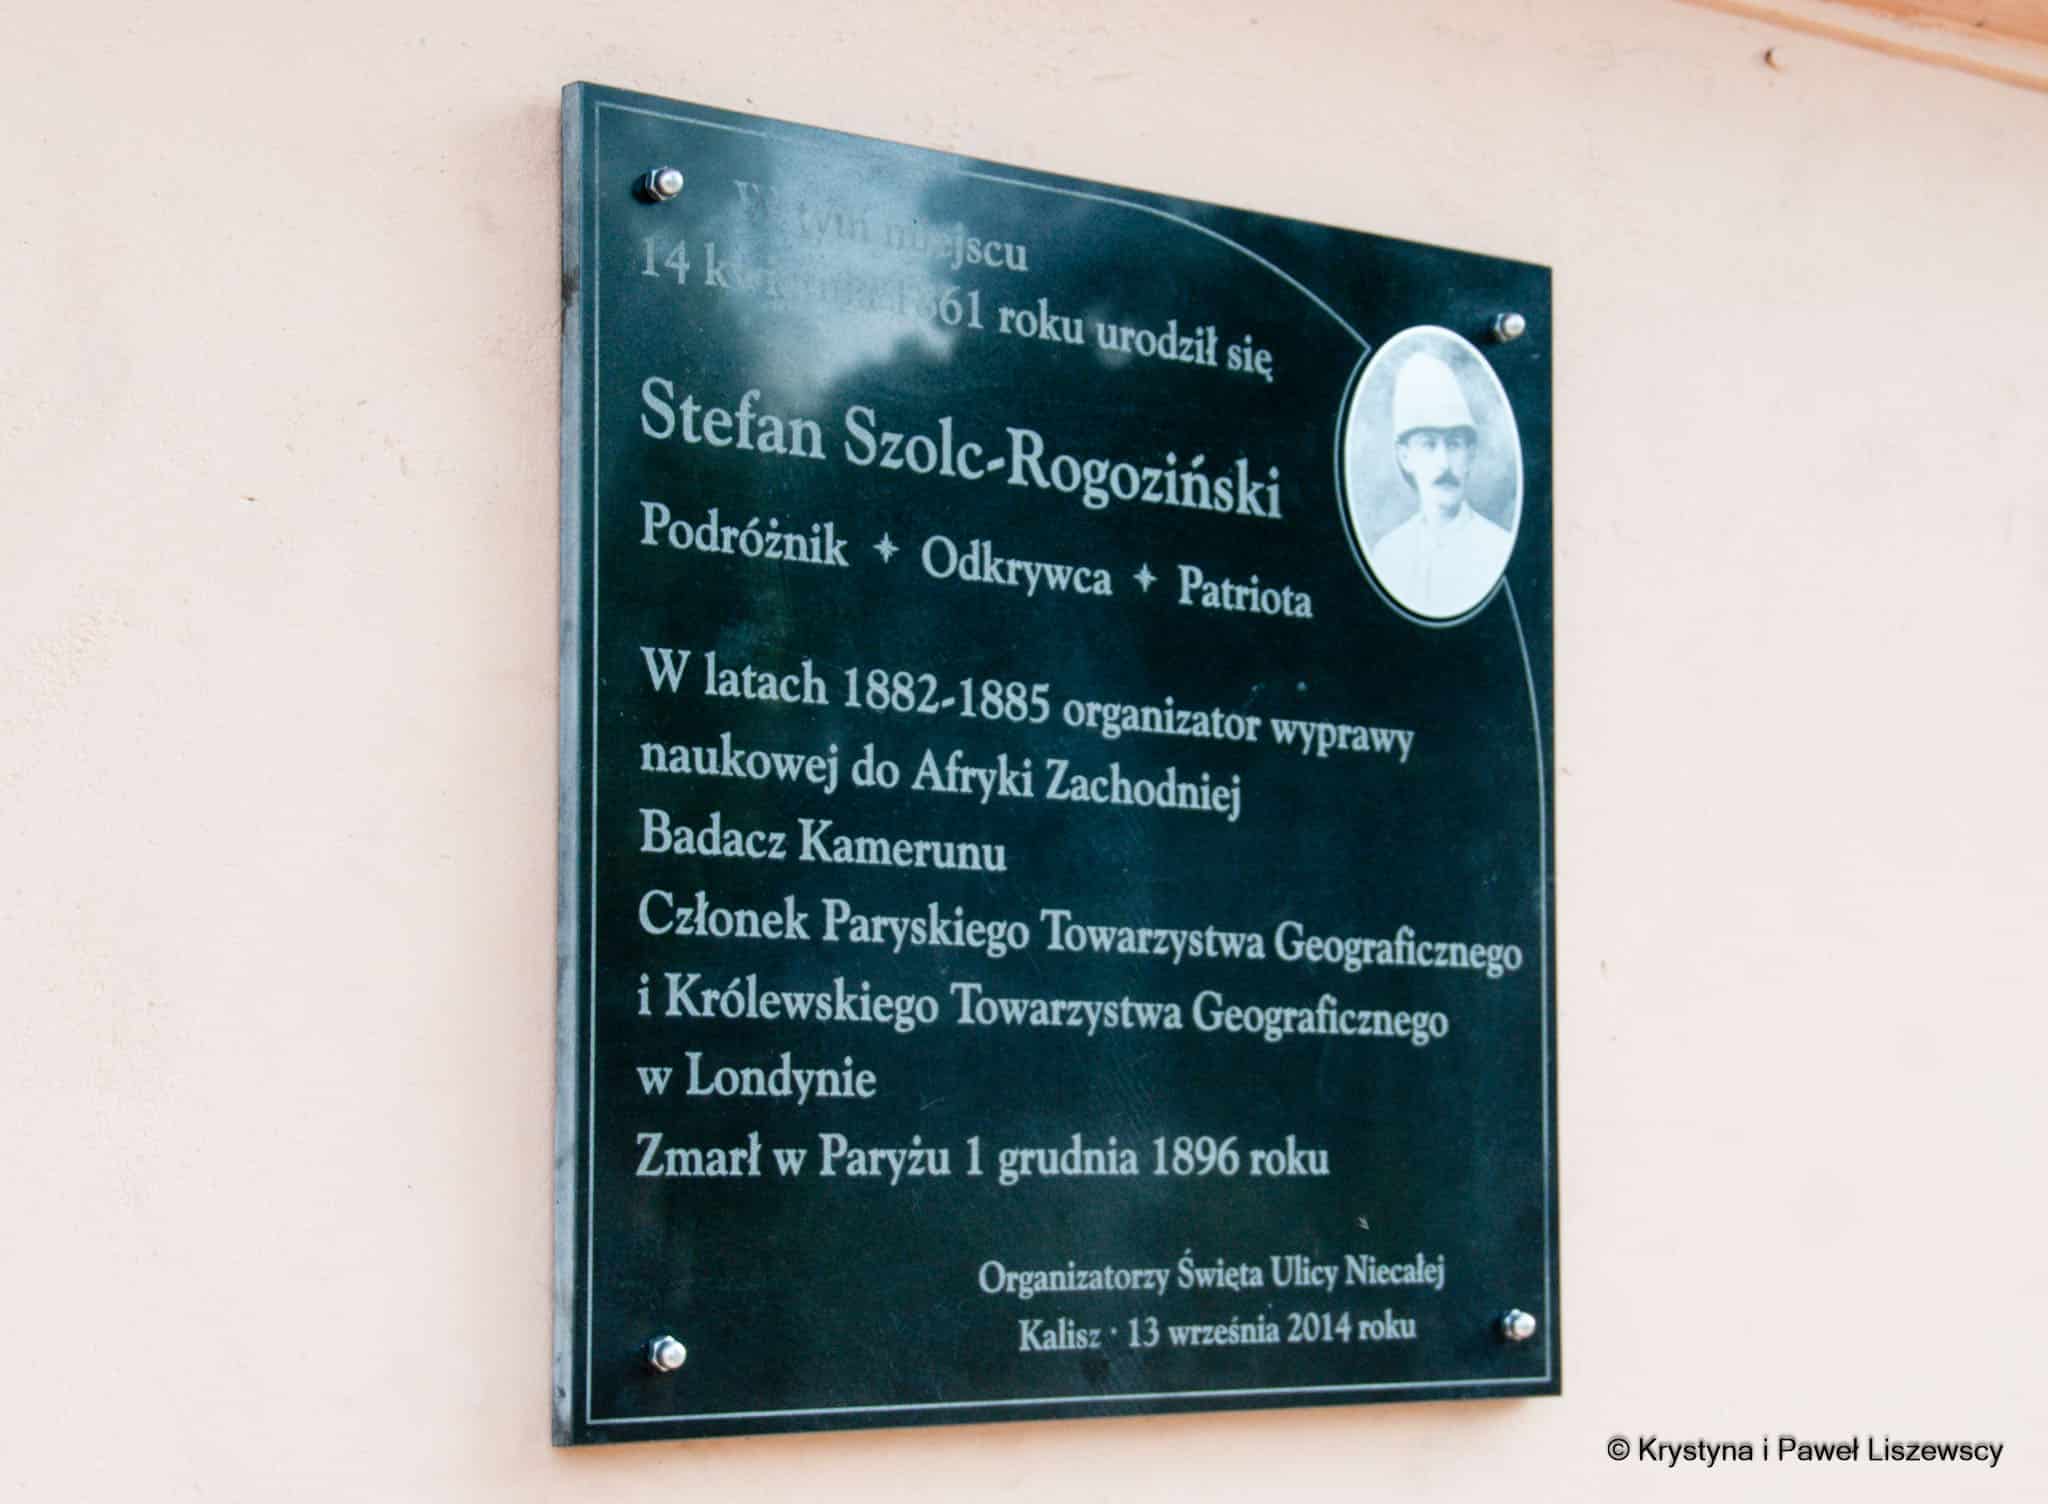 Stefan Szolc-Rogoziński